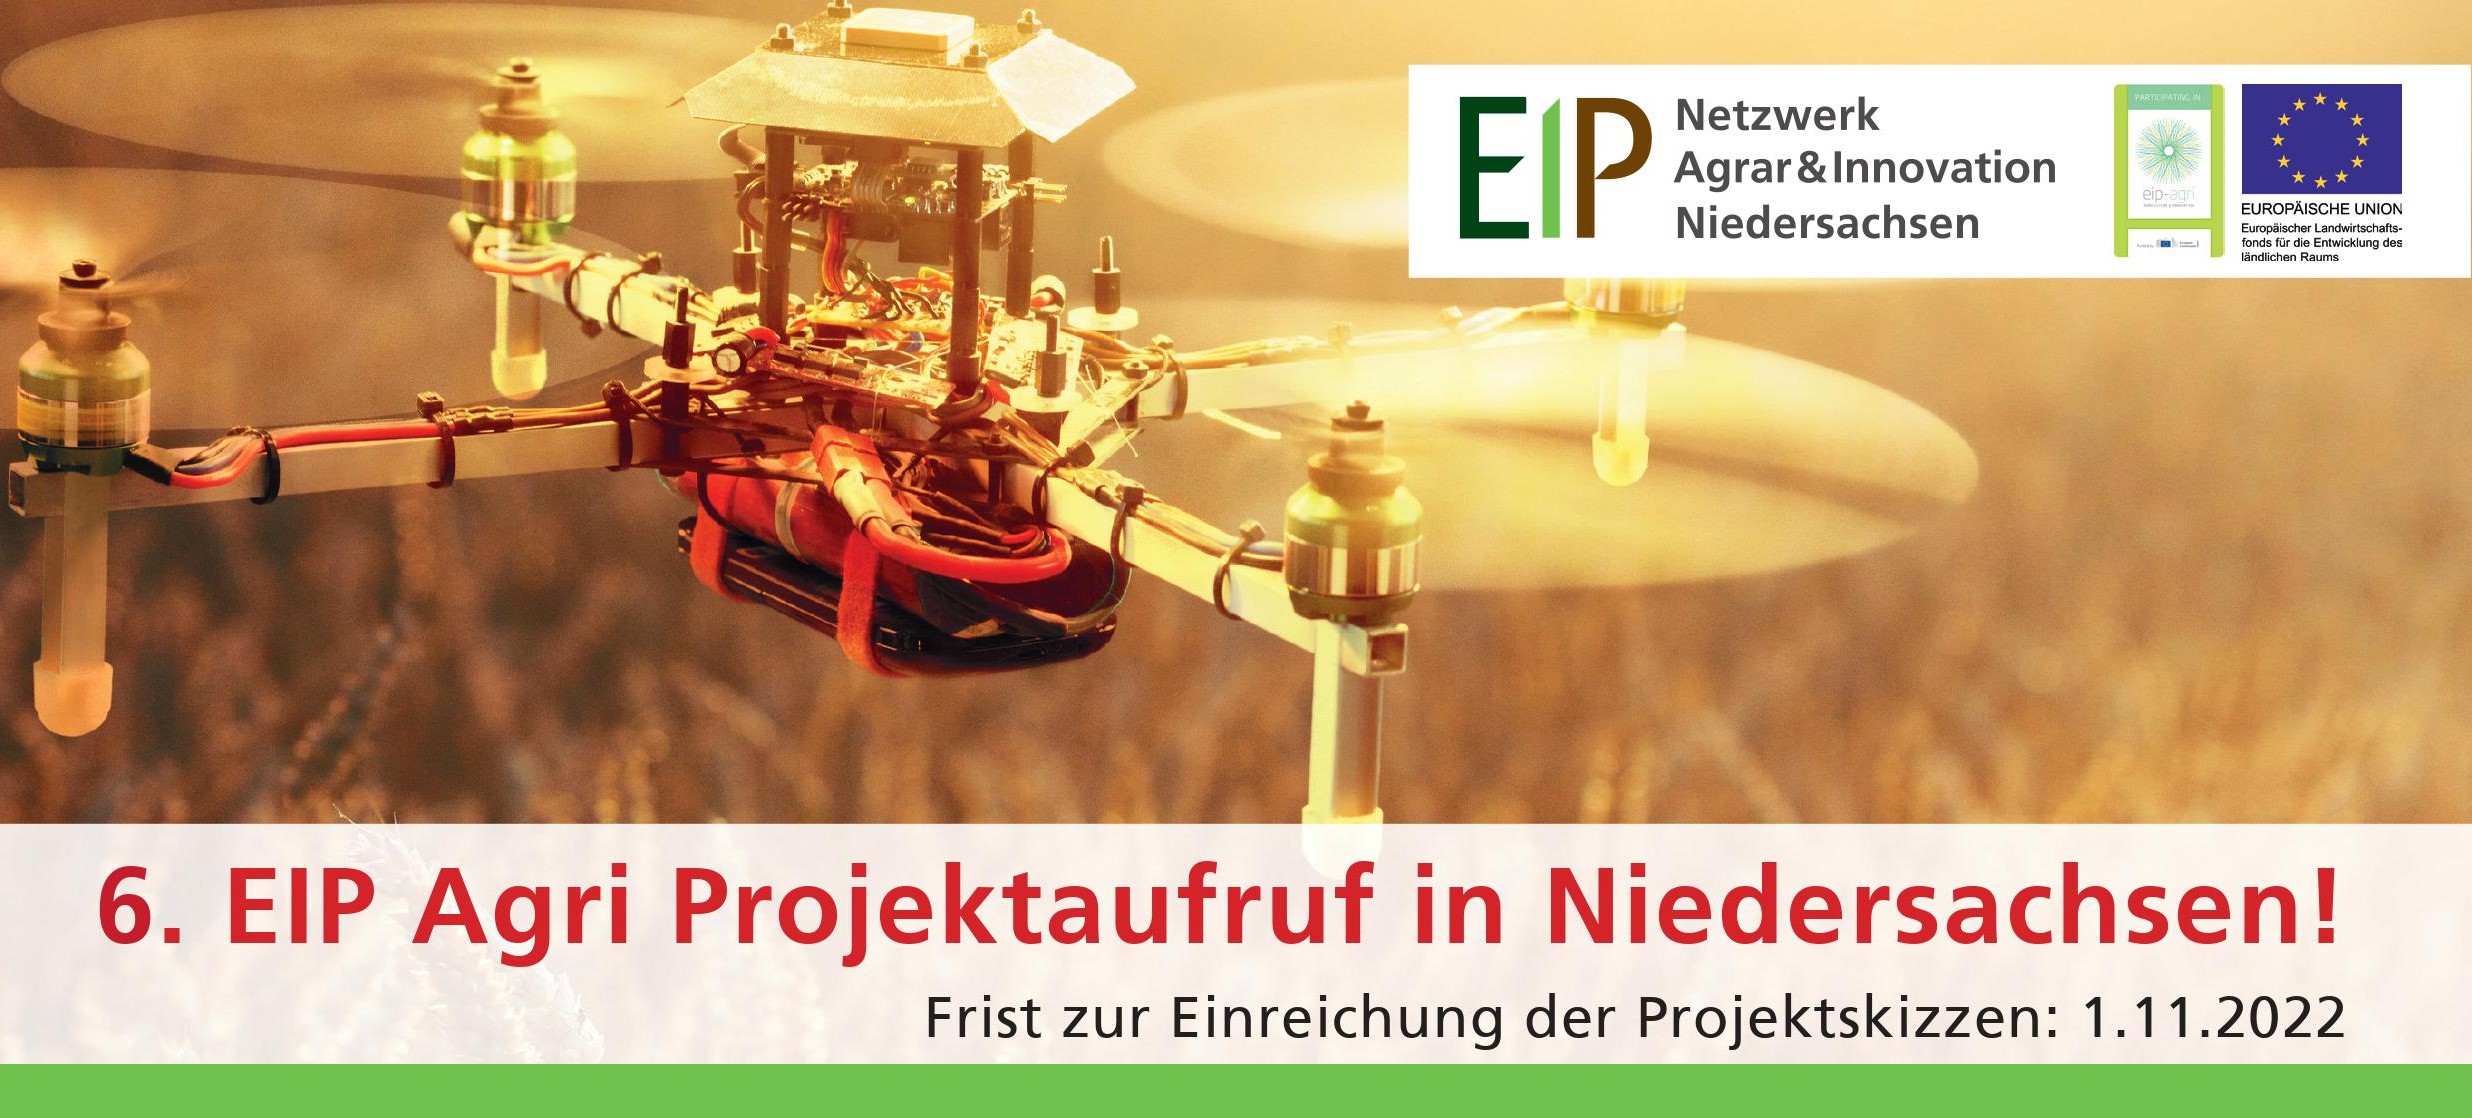 6. EIP Agri Projektaufruf in Niedersachsen